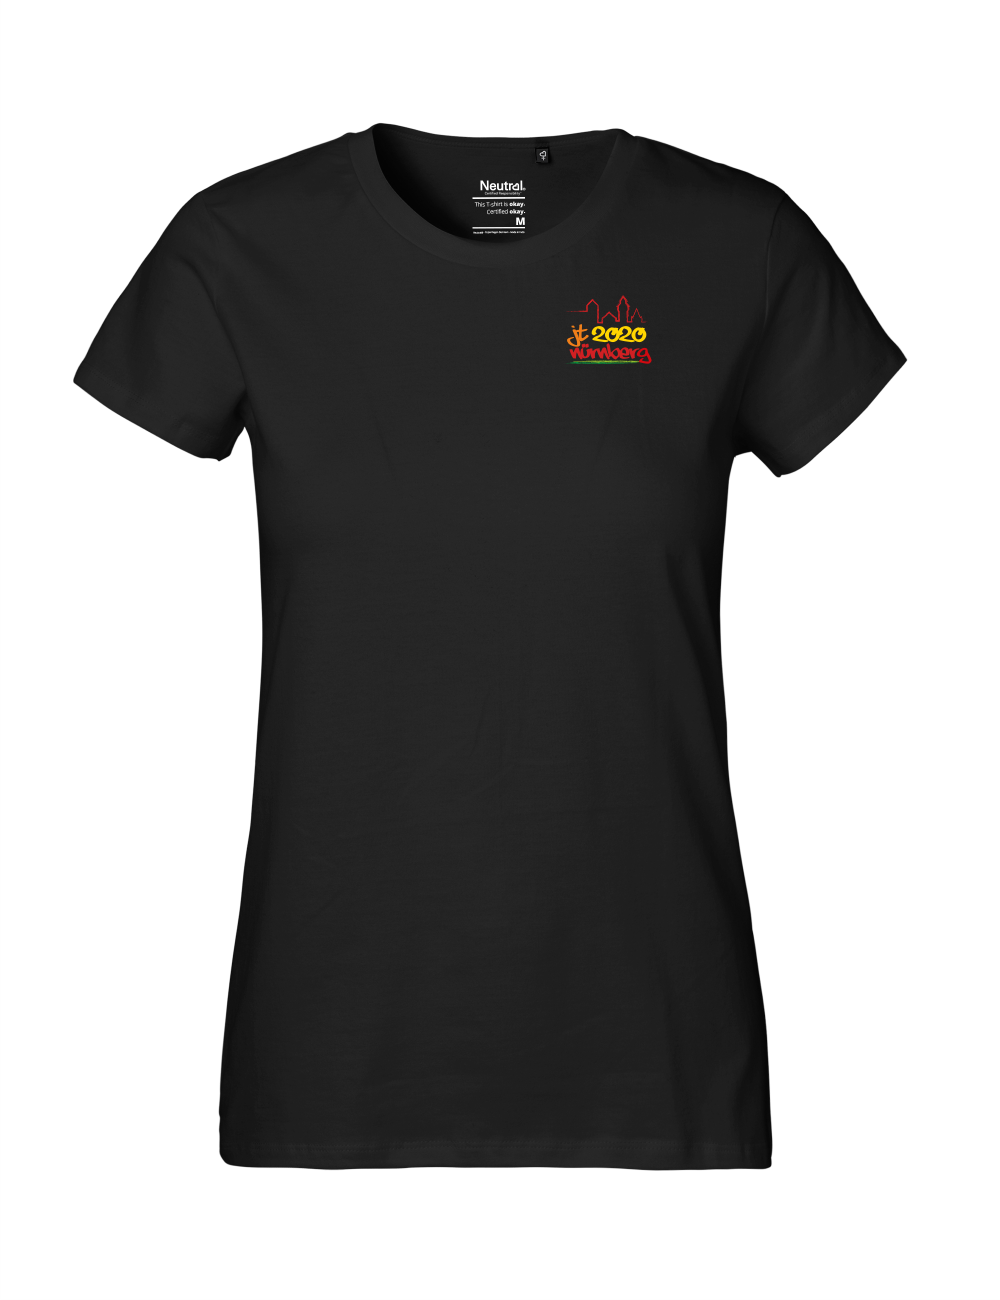 T-Shirt Damen "JT2020" Premium